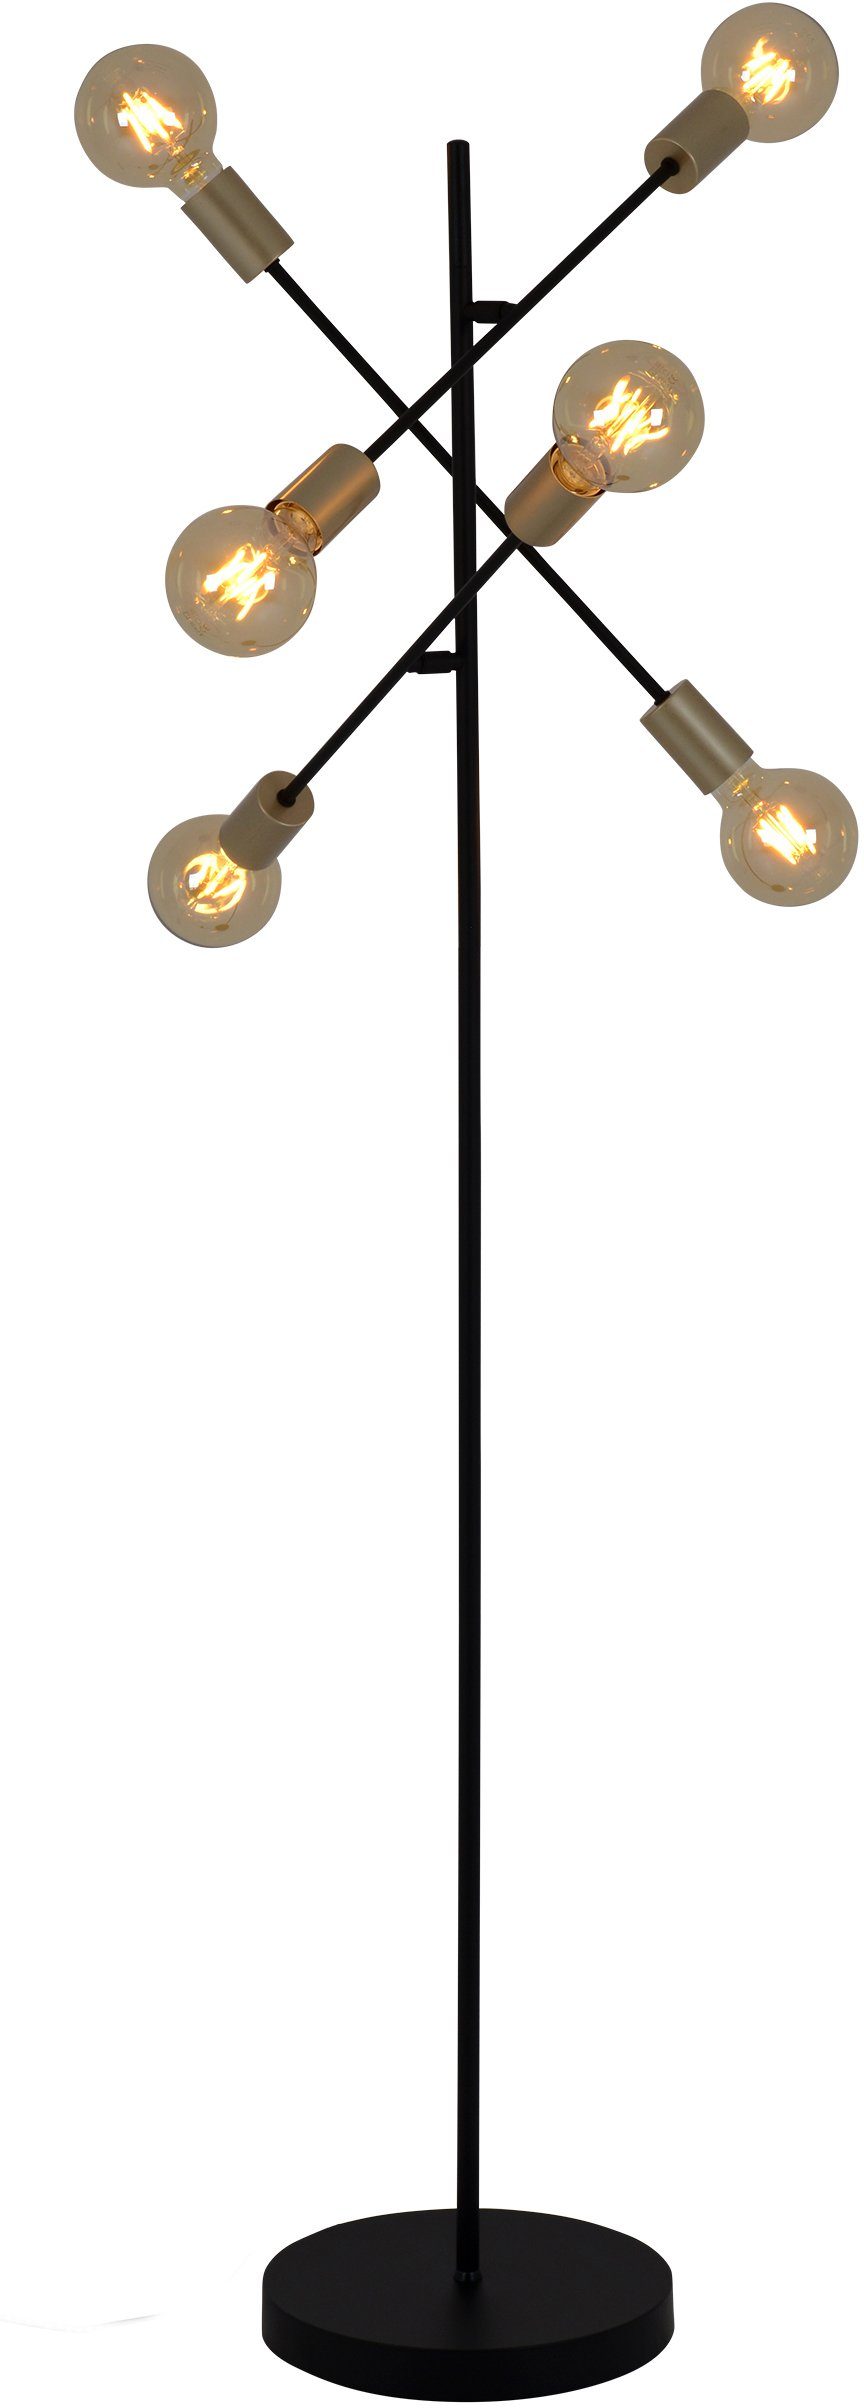 näve Stehlampe Modo, ohne Leuchtmittel, E27 max. 40W, incl. Tippschalter/Fußschalter, Farbe: schwarz, gold | Standleuchten